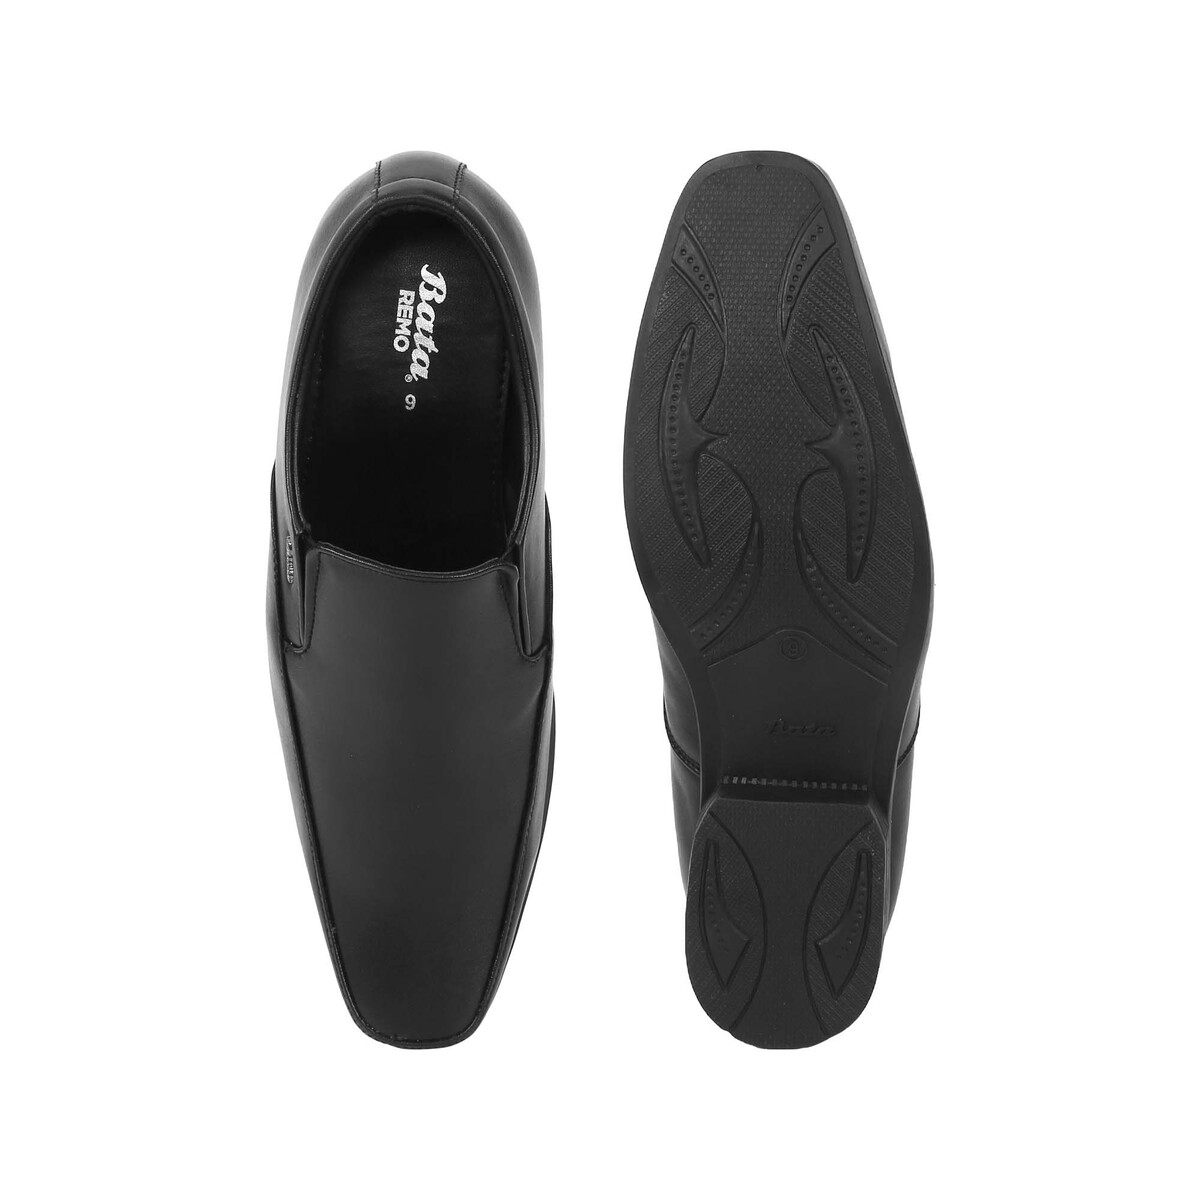 Bata Men's Formal Shoes 851-6674 Black, Size 8 (42) Online at Best ...